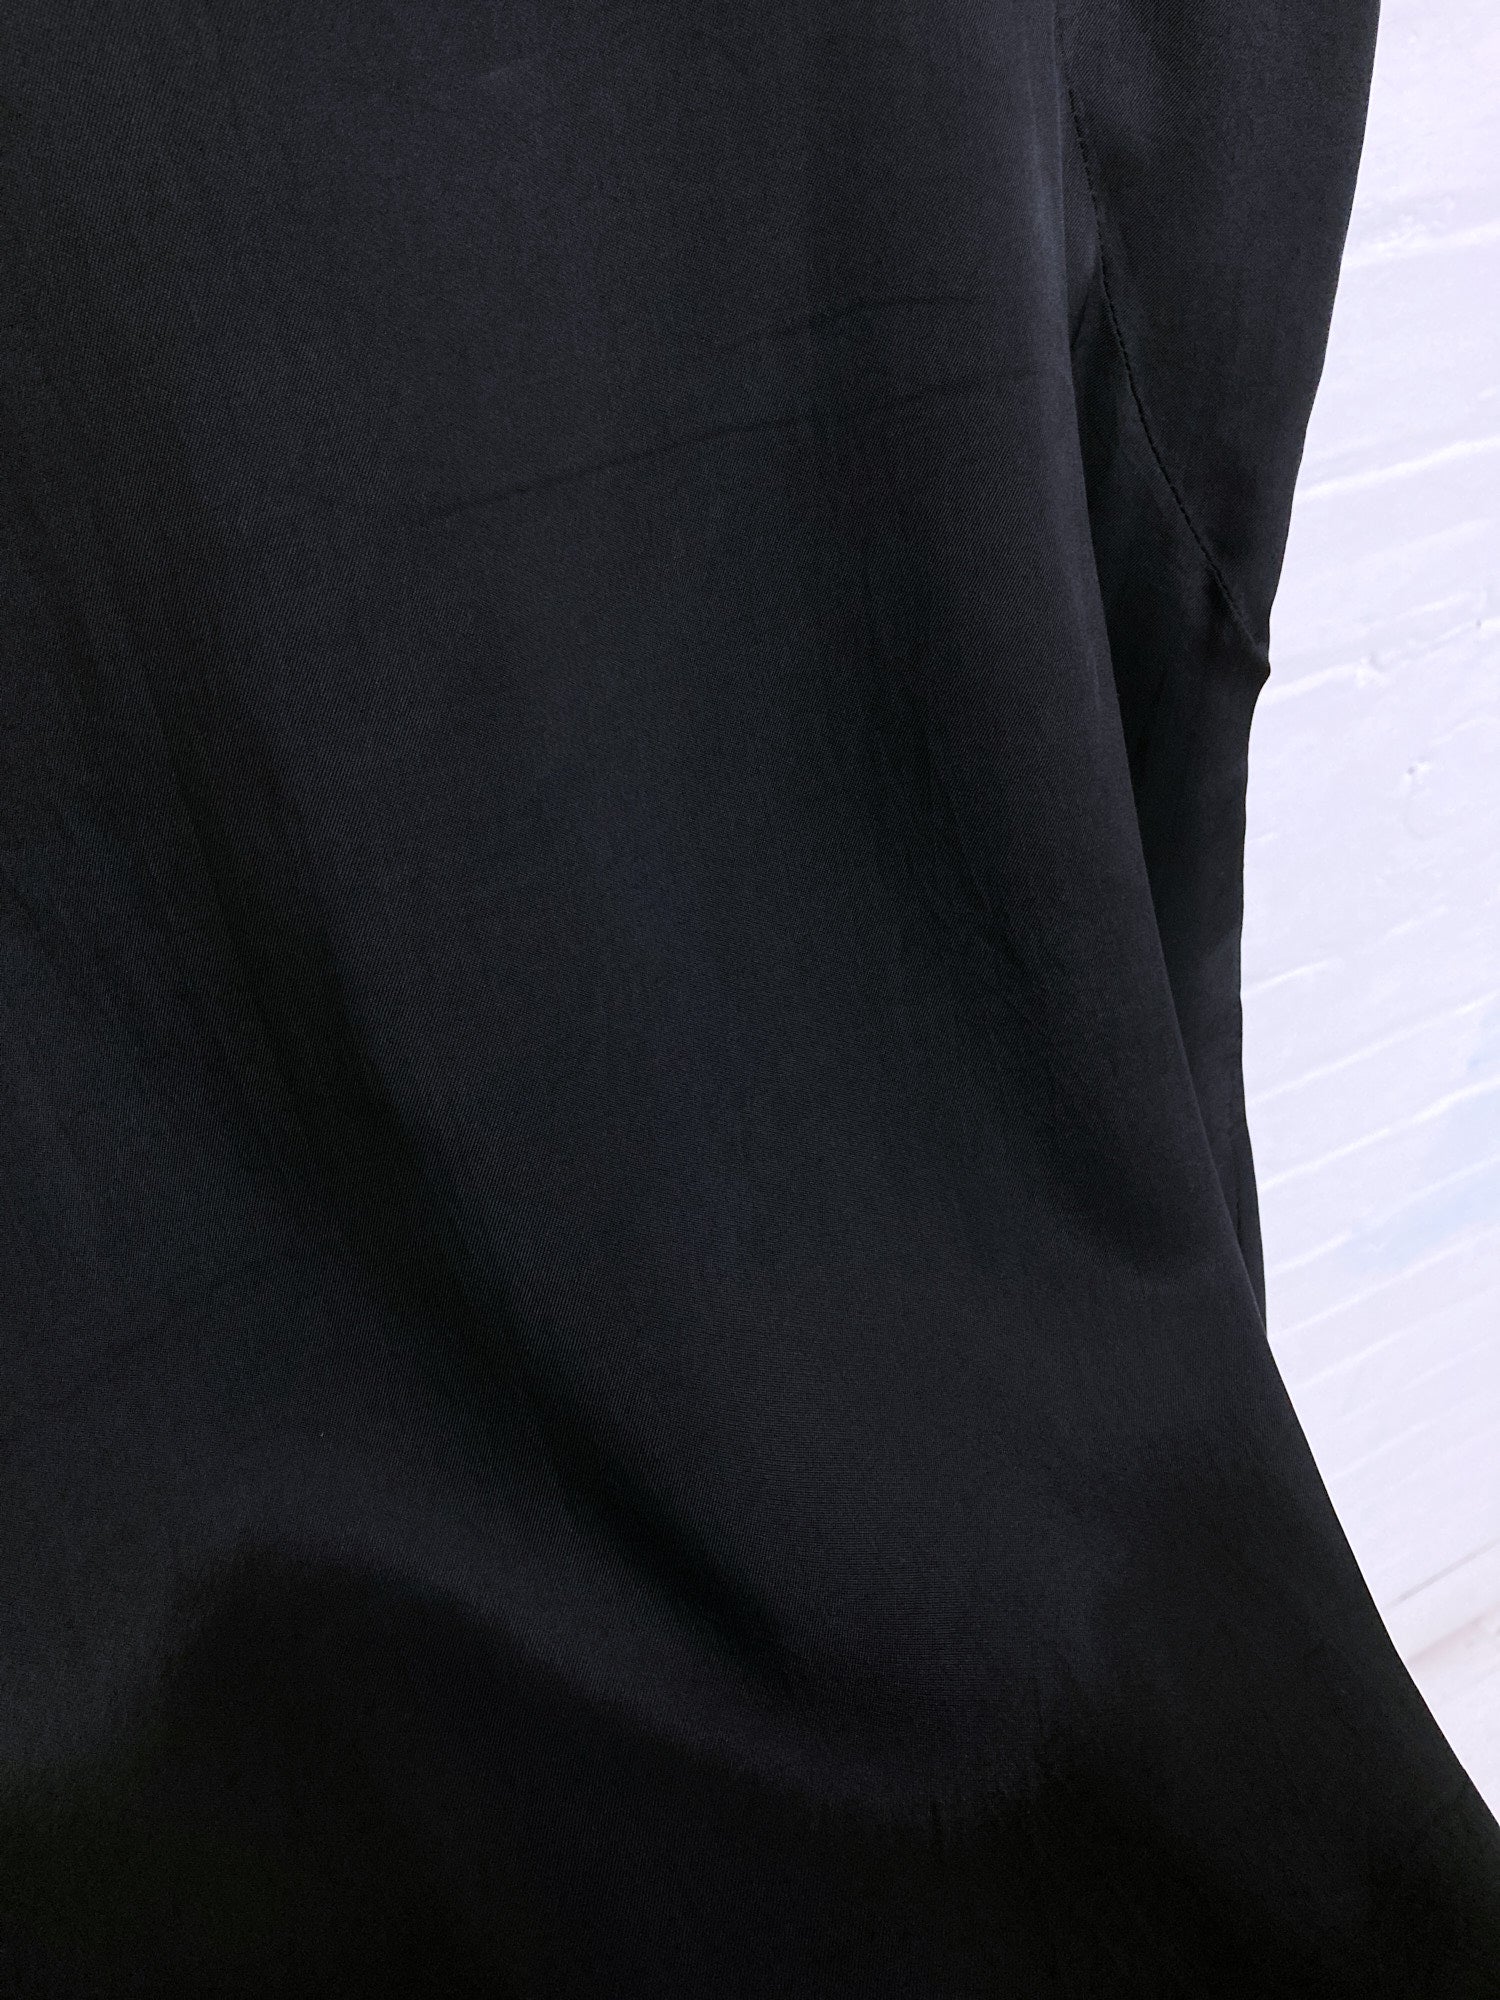 Jean Colonna sheeny black rayon v-neck sleeveless dress - size 38